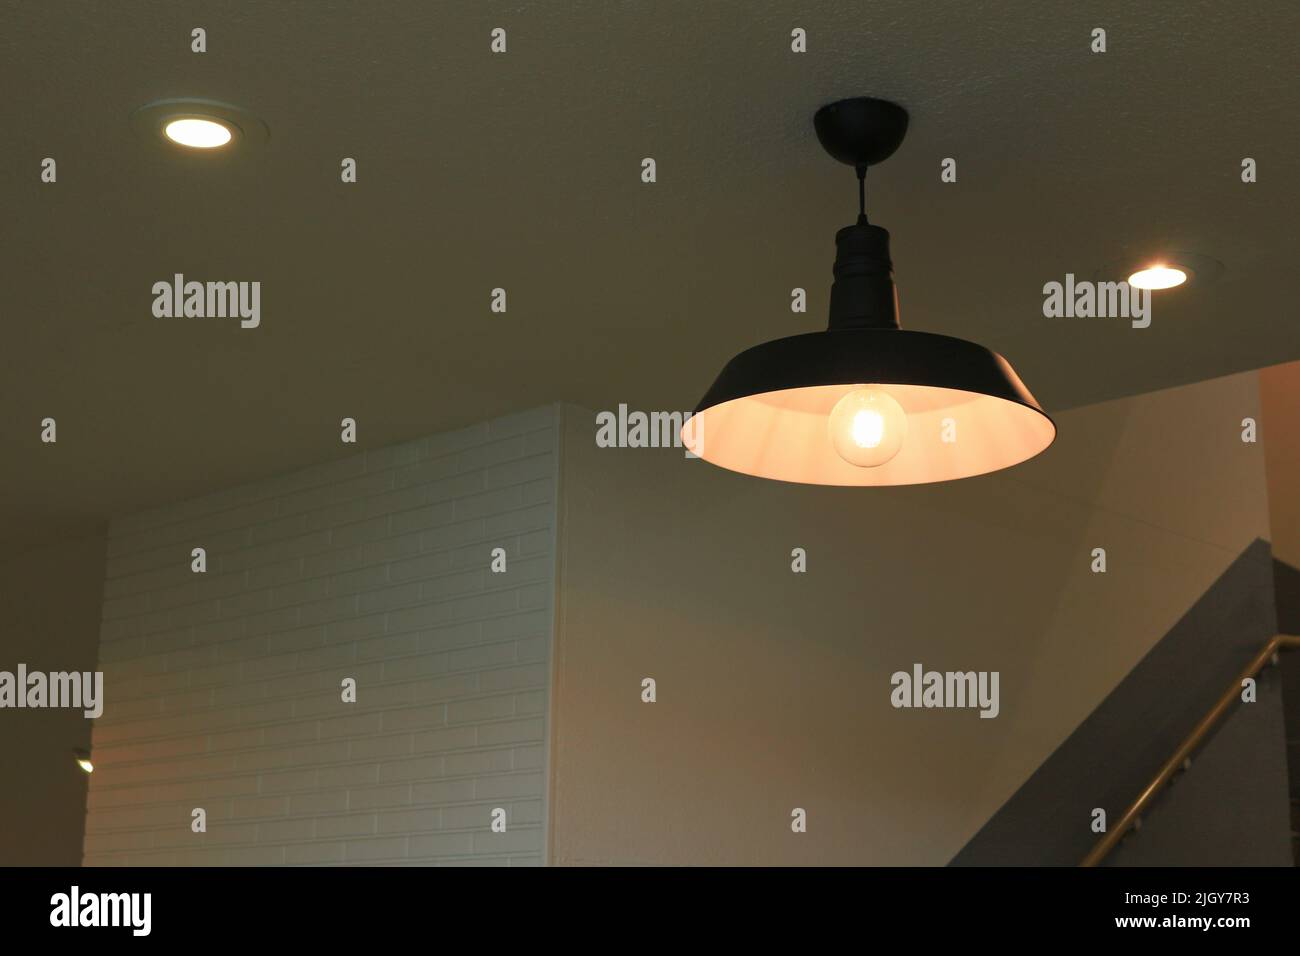 Die Beleuchtung eines Lampenschirms aus Eisen mit einem schlichten Design hing in einem schwach beleuchteten Raum Stockfoto